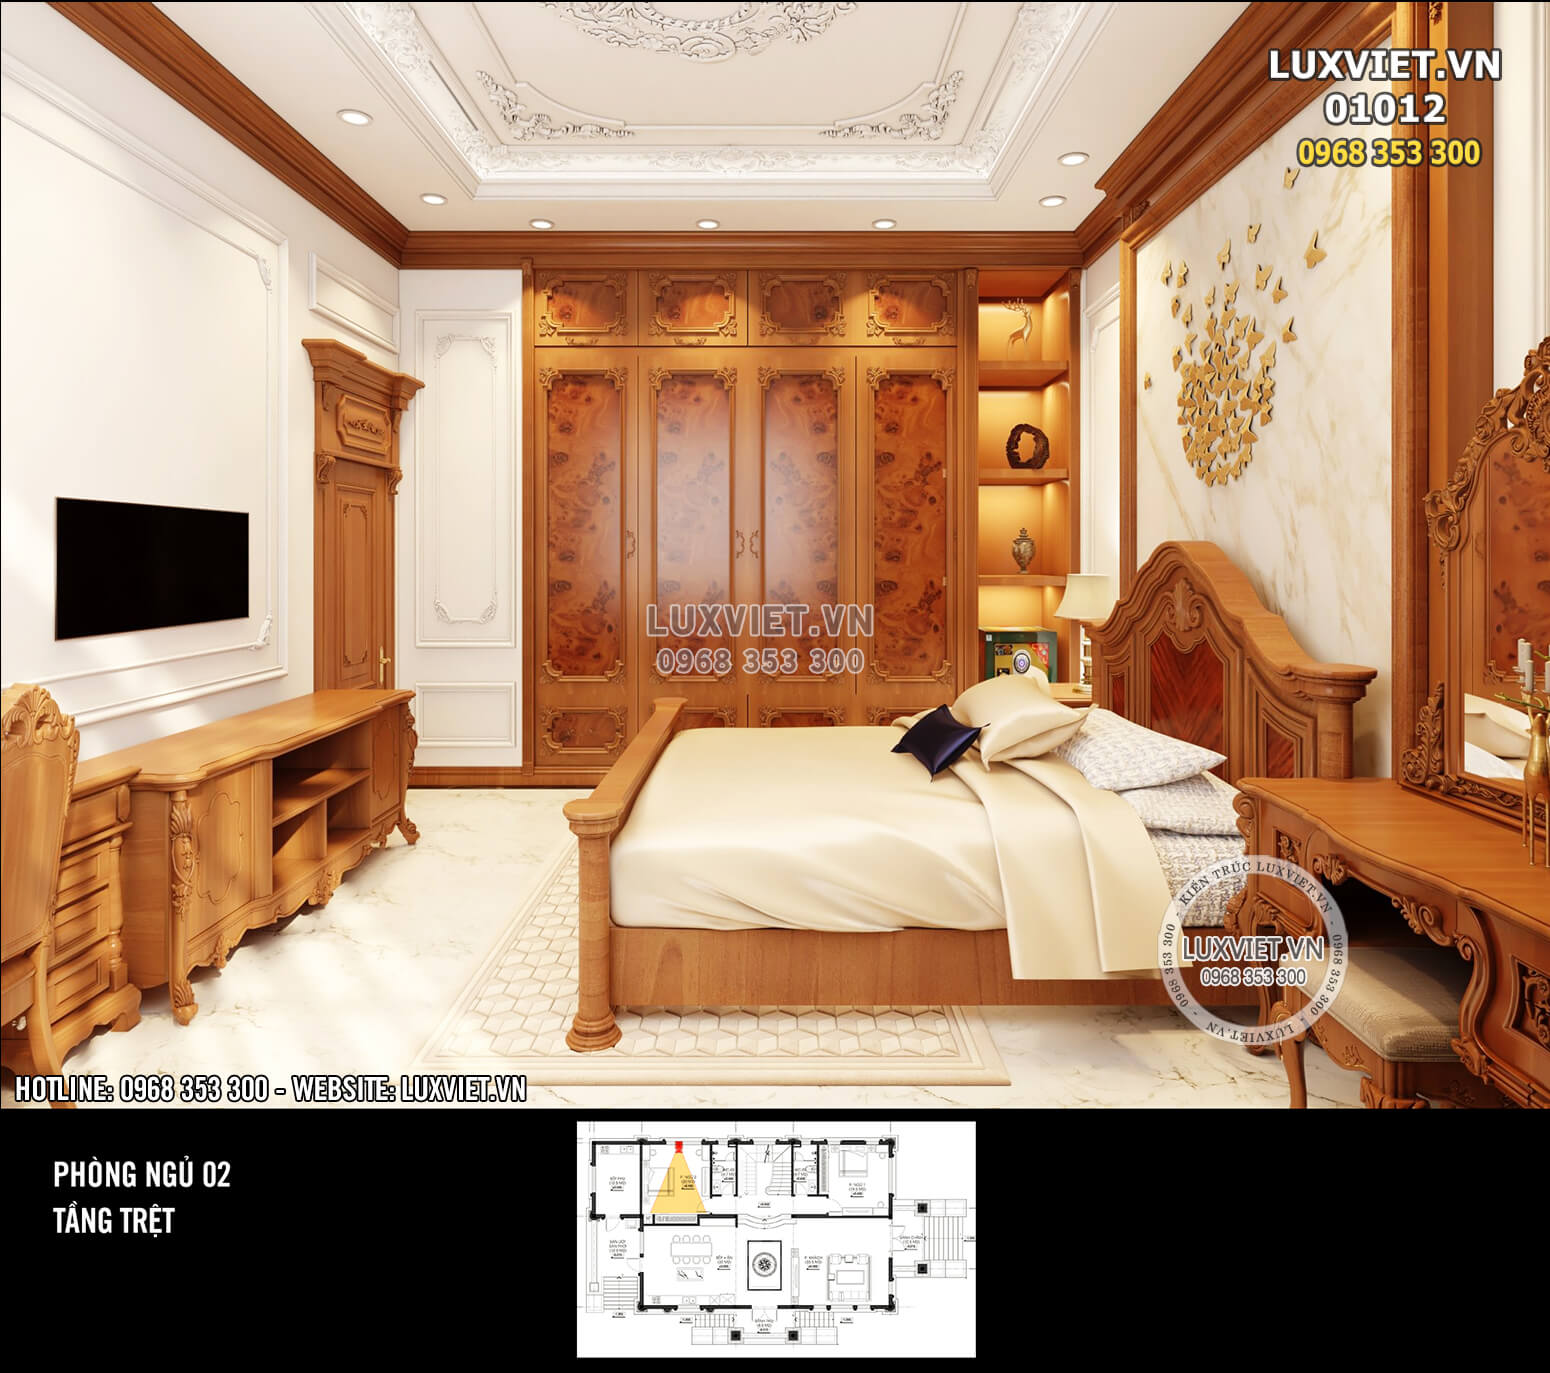 Hình ảnh: Không gian phòng ngủ 2 được thiết kế tương tự như phòng ngủ 1